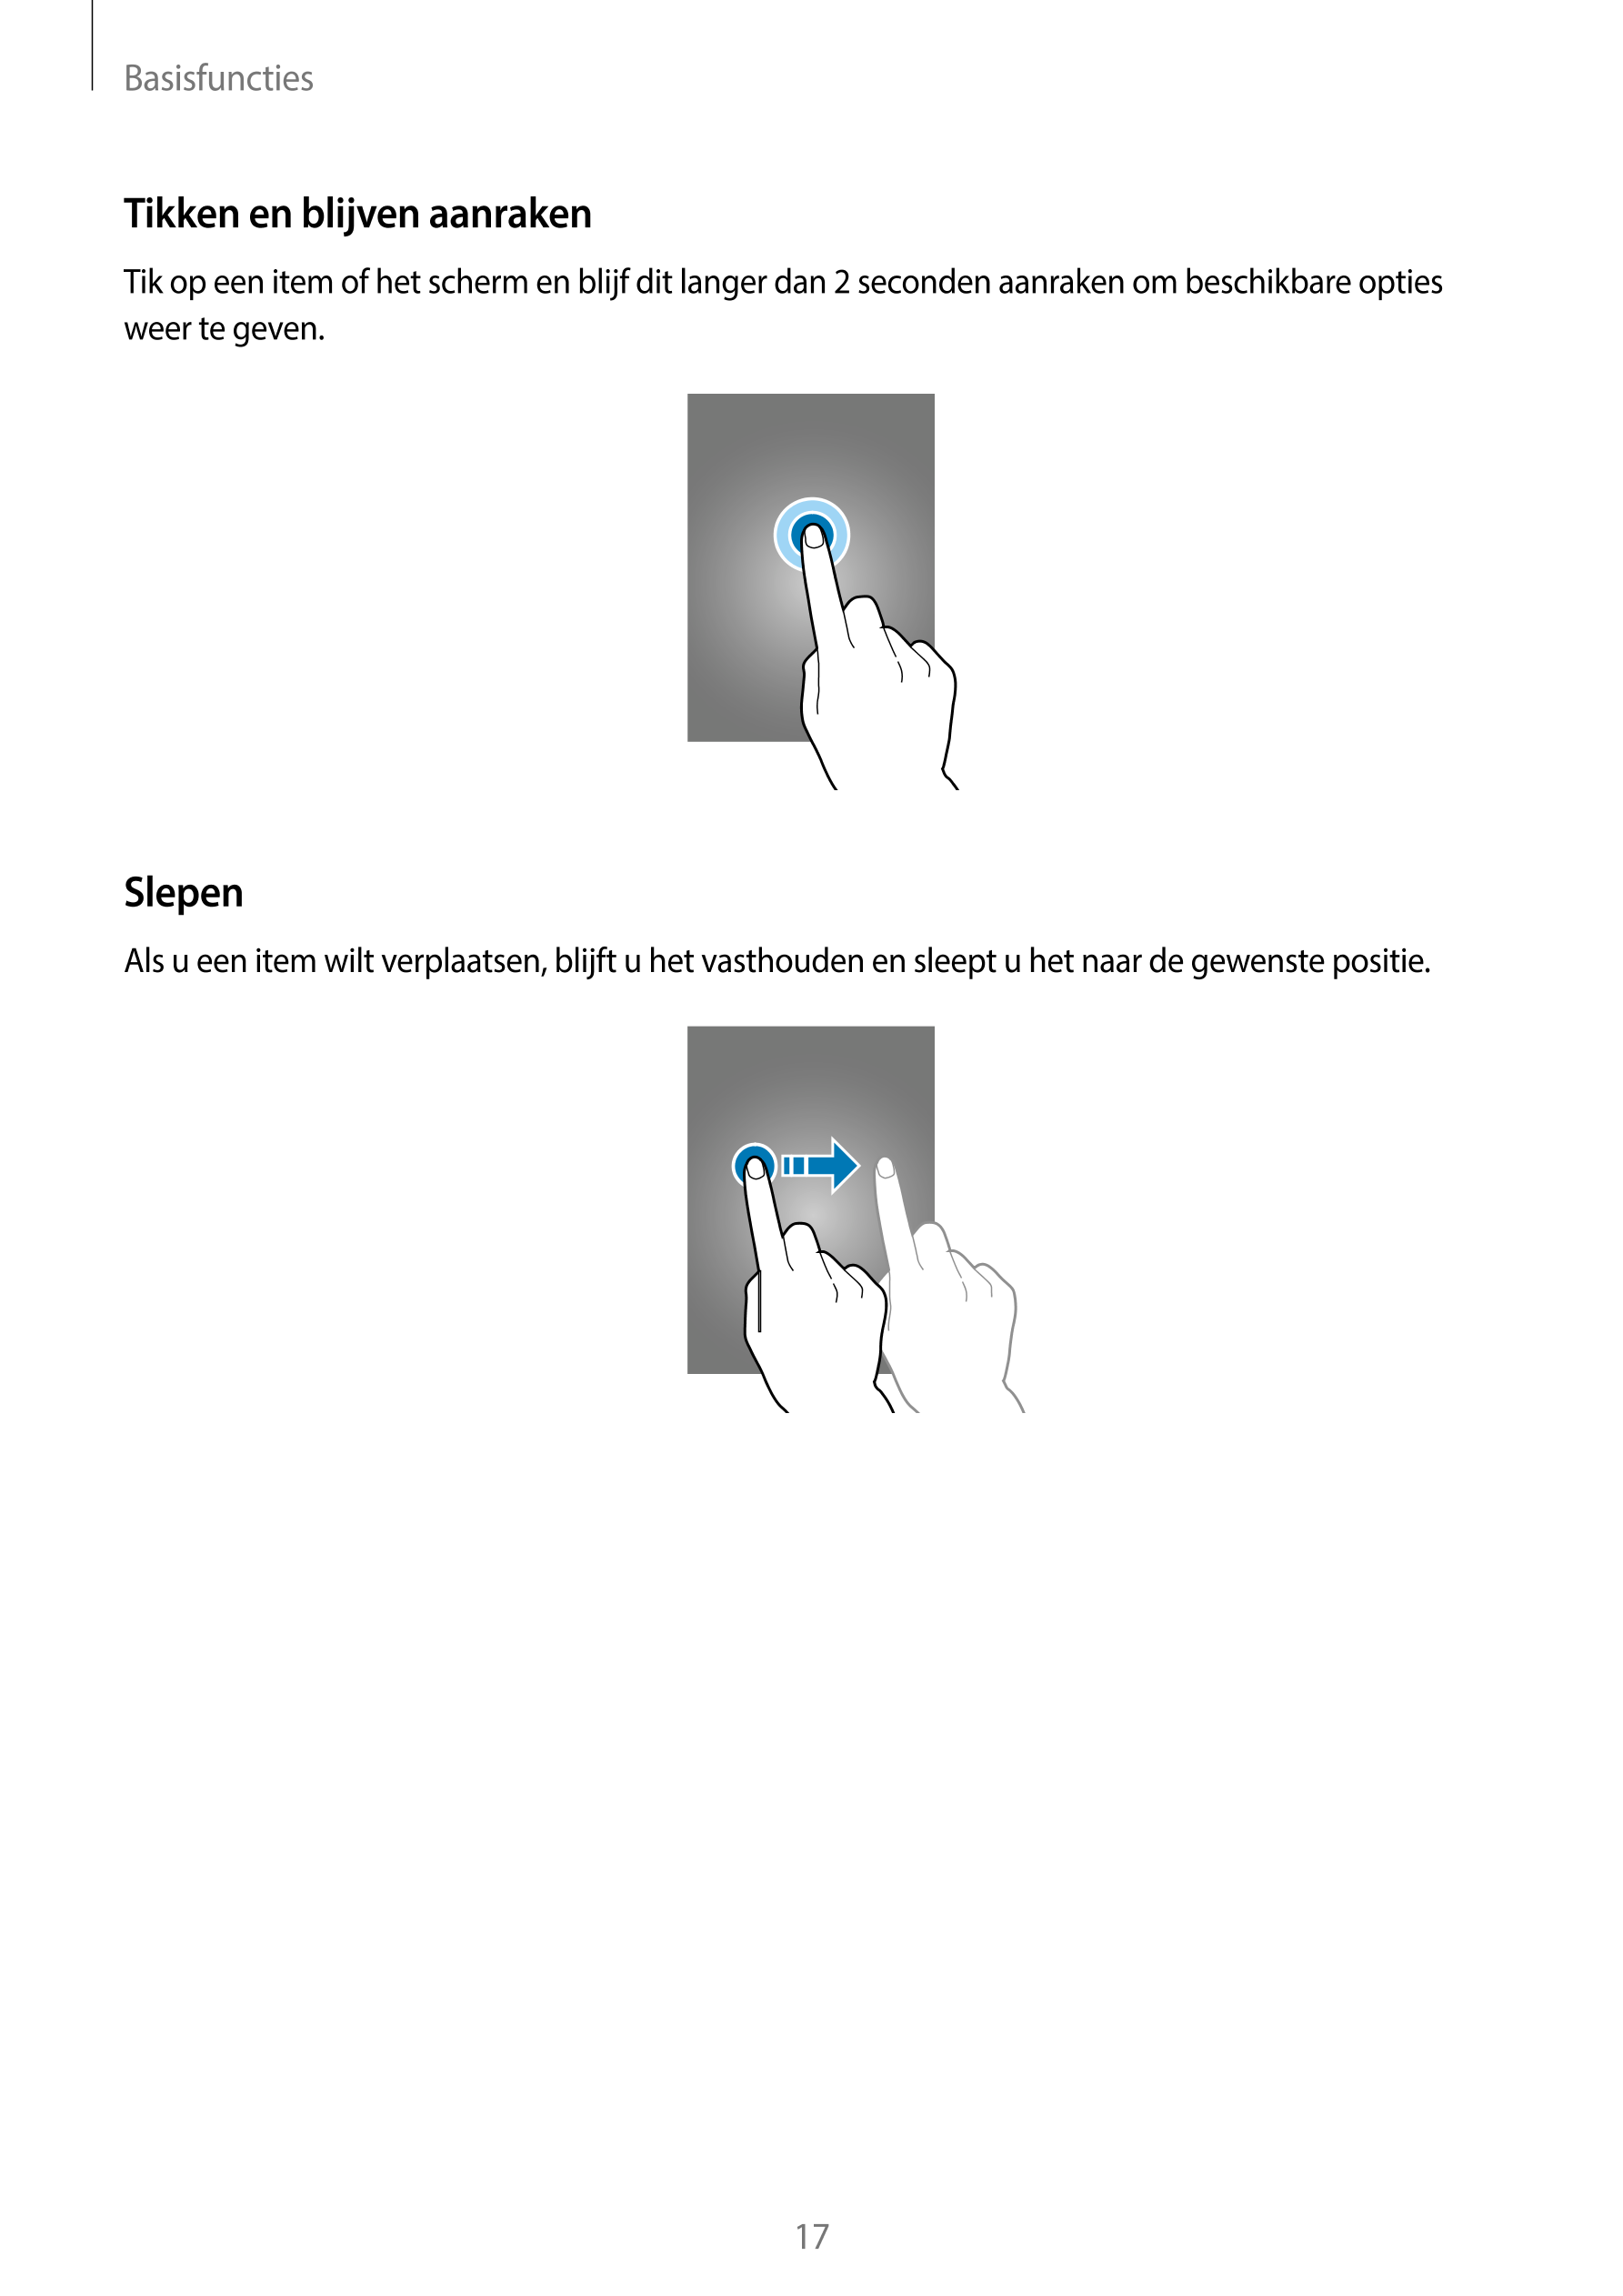 Basisfuncties
Tikken en blijven aanraken
Tik op een item of het scherm en blijf dit langer dan 2 seconden aanraken om beschikbar